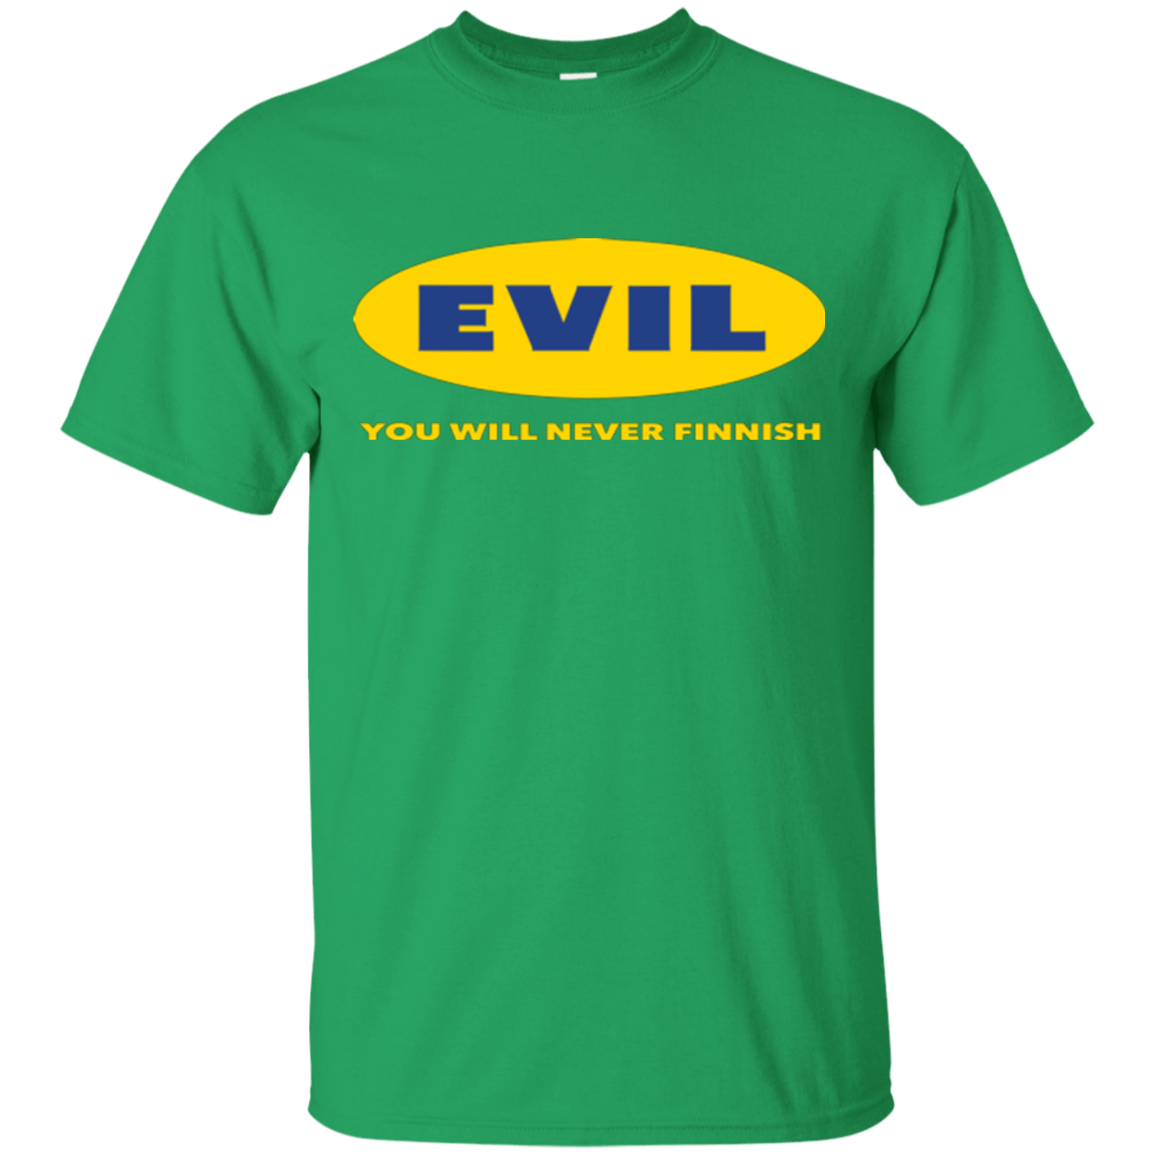 T-Shirts Irish Green / Small EVIL Never Finnish T-Shirt